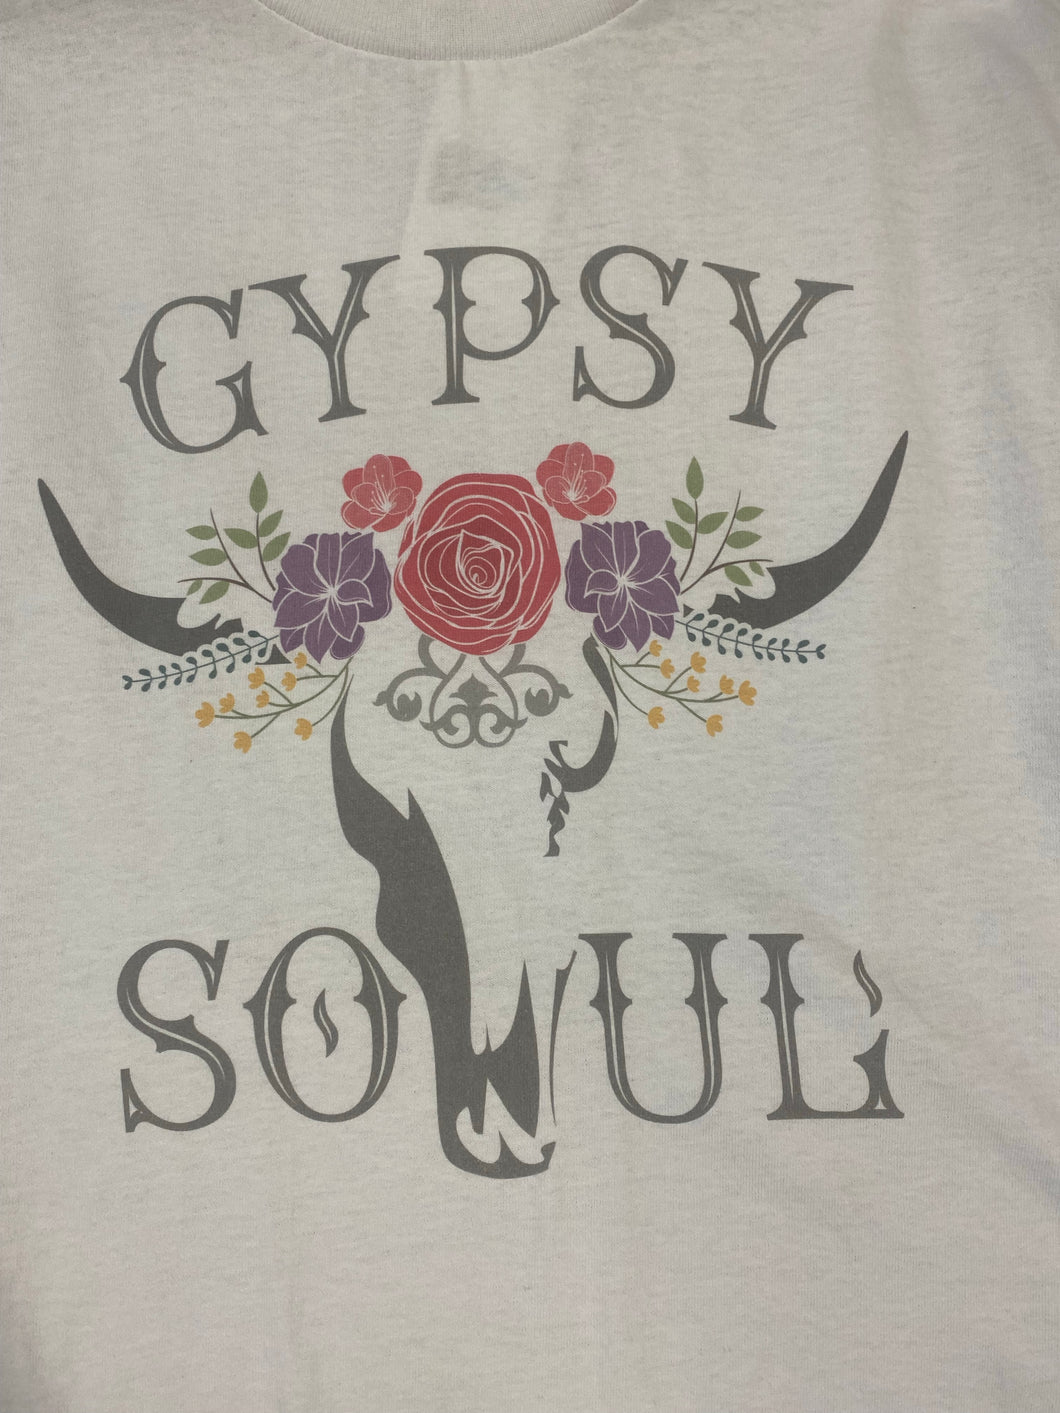 Gypsy Soul Youth Tee